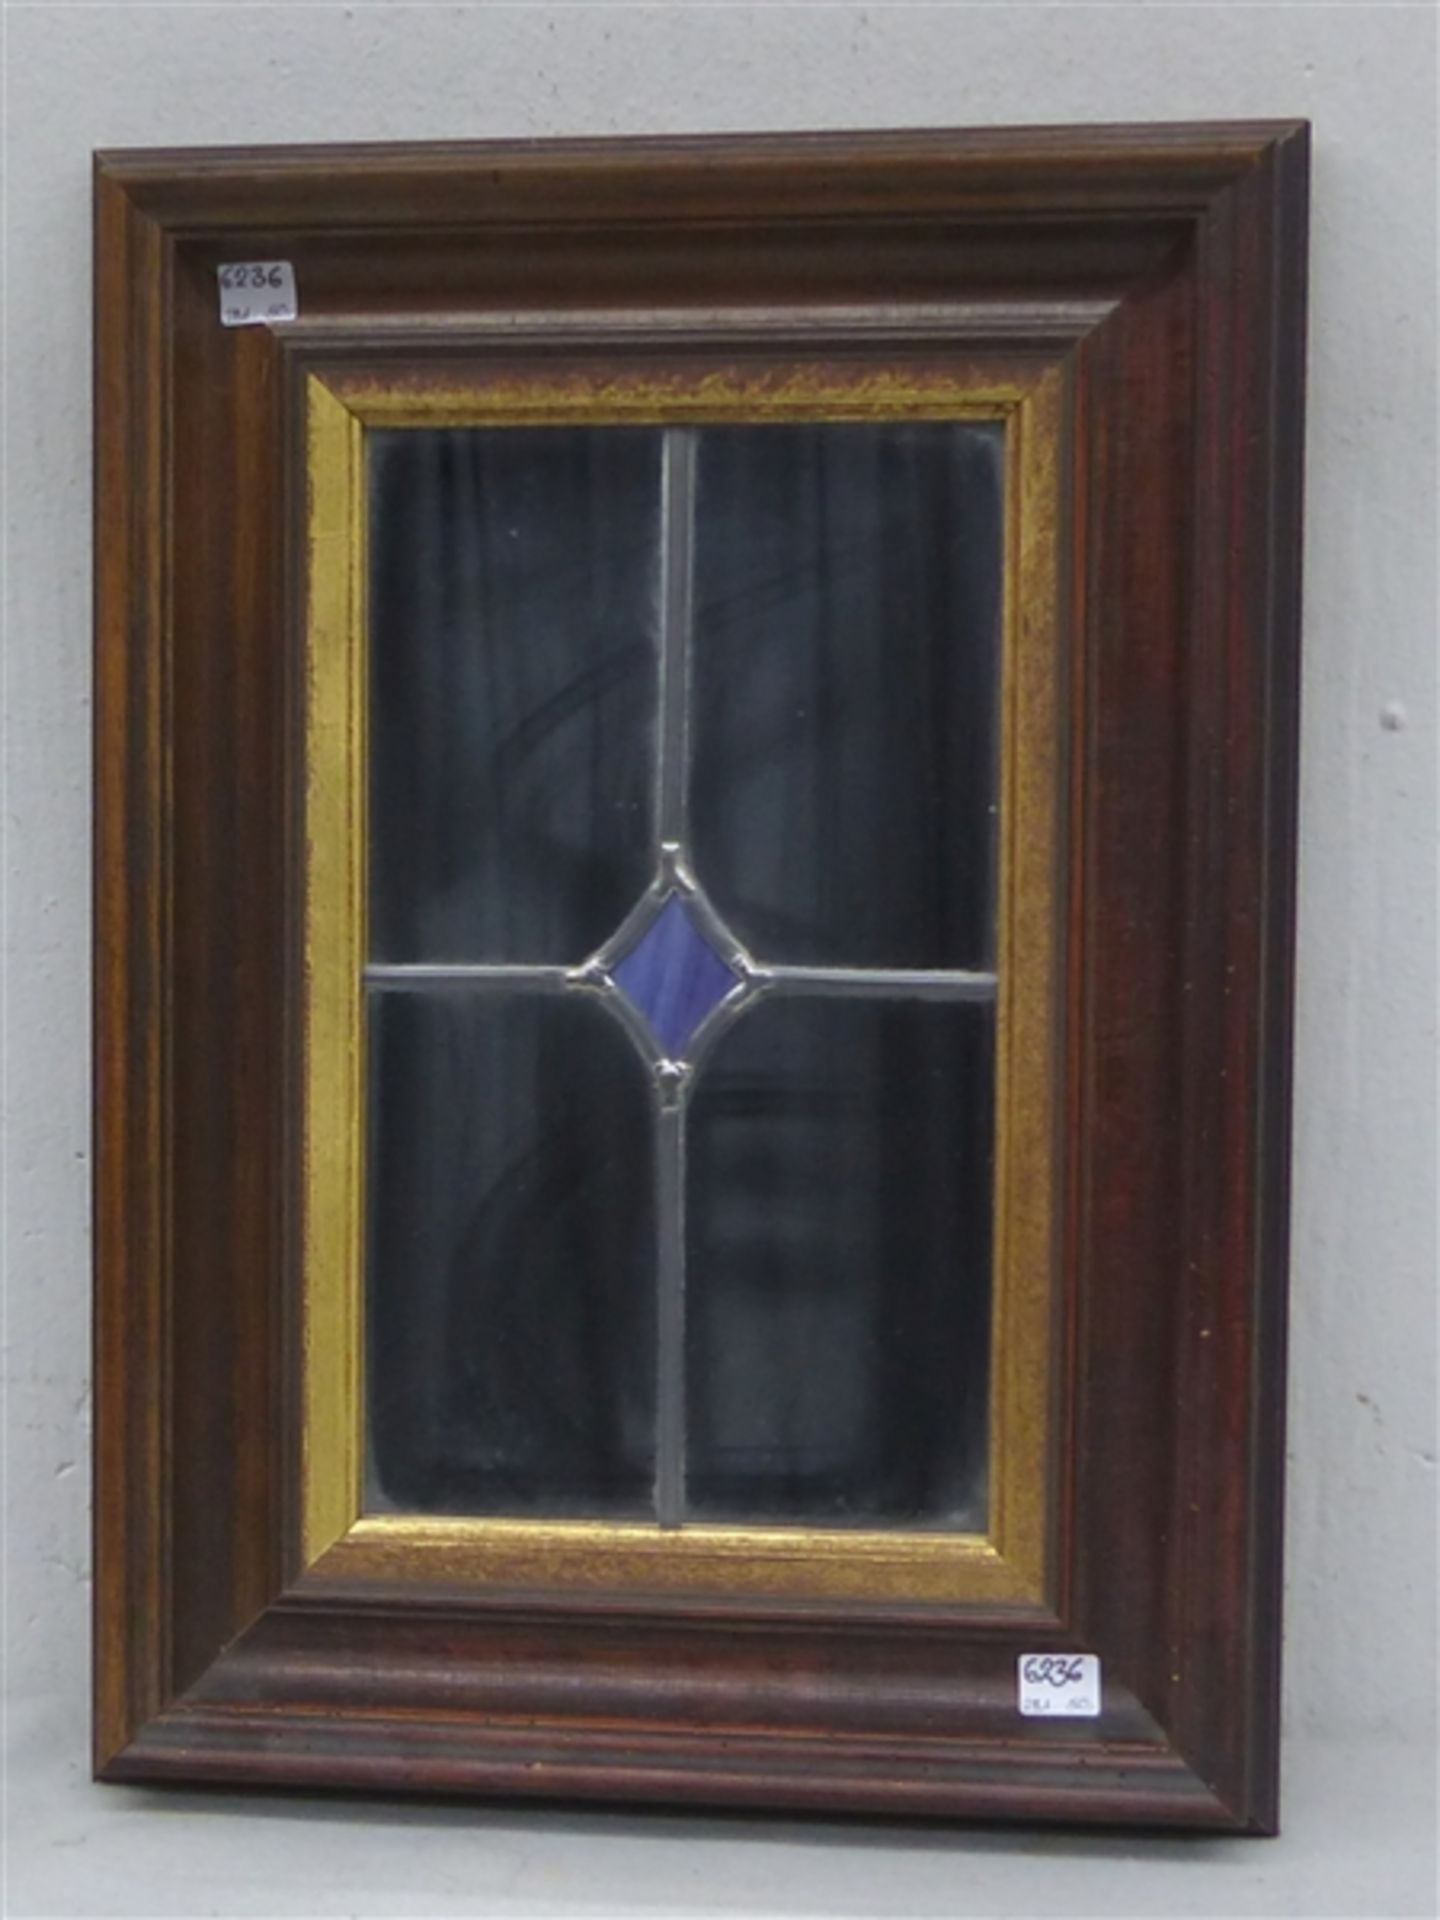 Spiegel mit Bleiverglasung, im Rahmen, Ende 20. Jh., 48x34 cm,